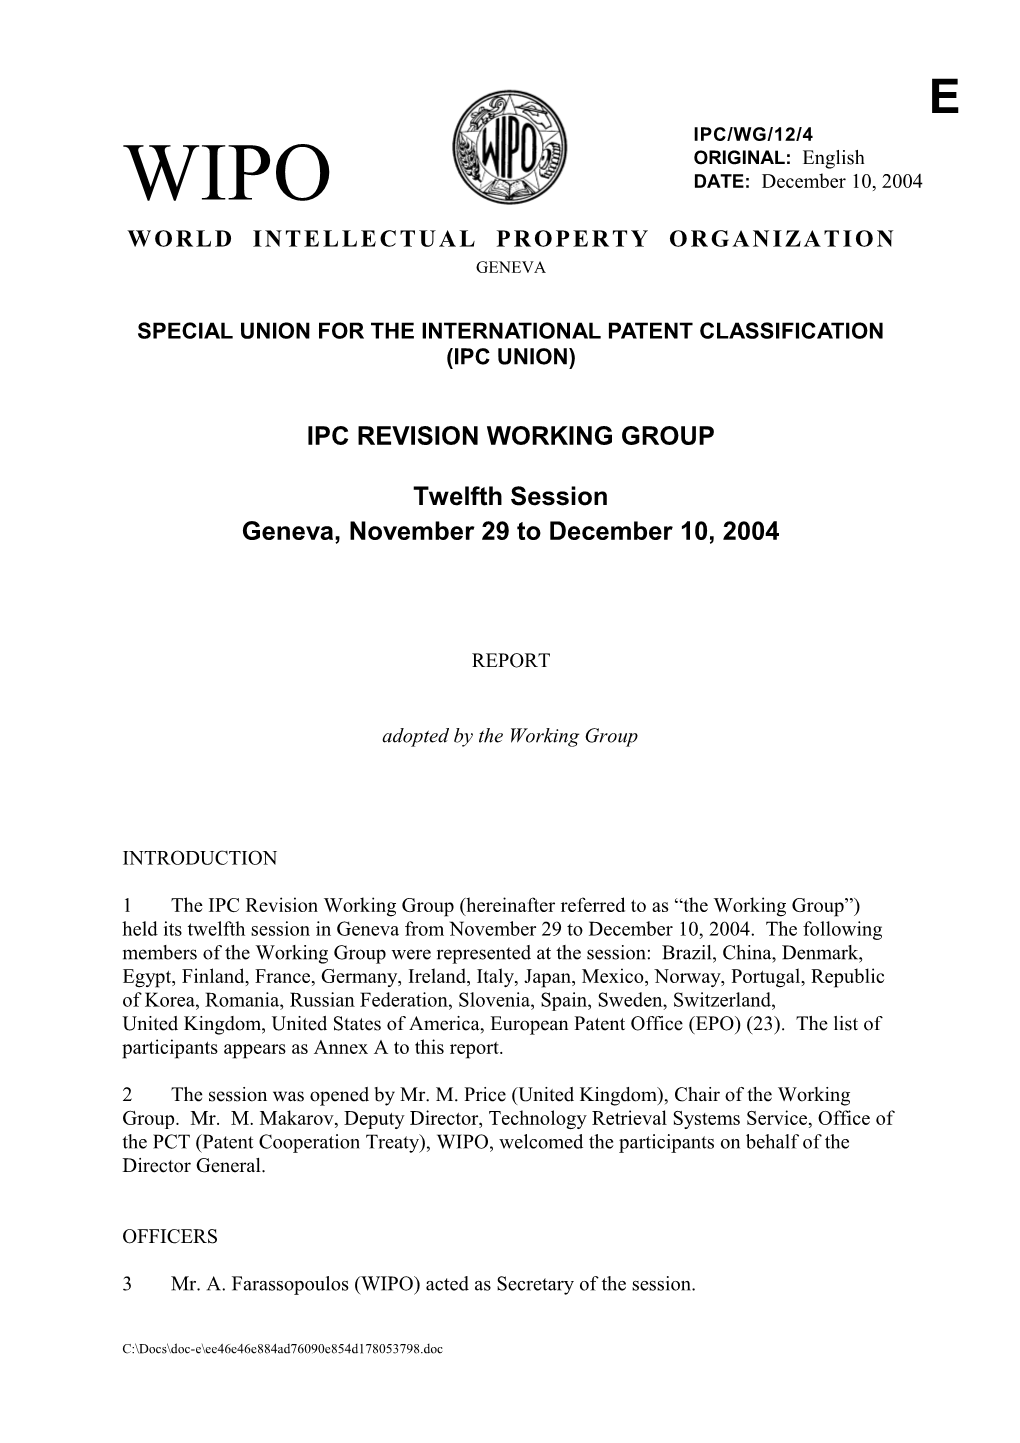 IPC/WG/12/4: Report (Main)